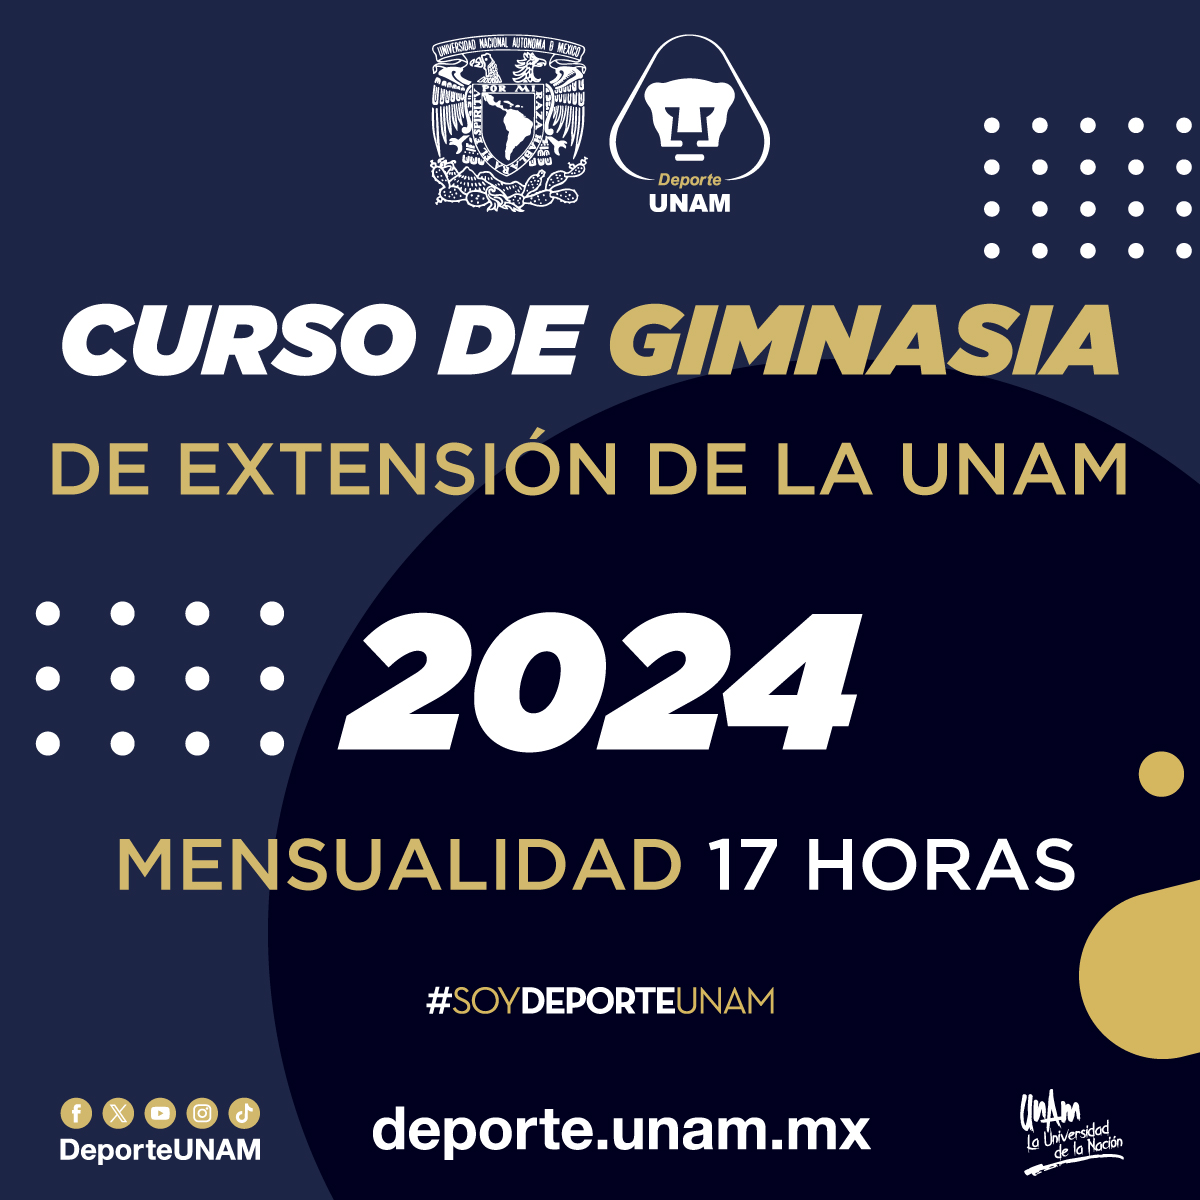 CURSO DE GIMNASIA DE EXTENSIÓN DE LA UNAM 2024 MENSUALIDAD 17 HORAS